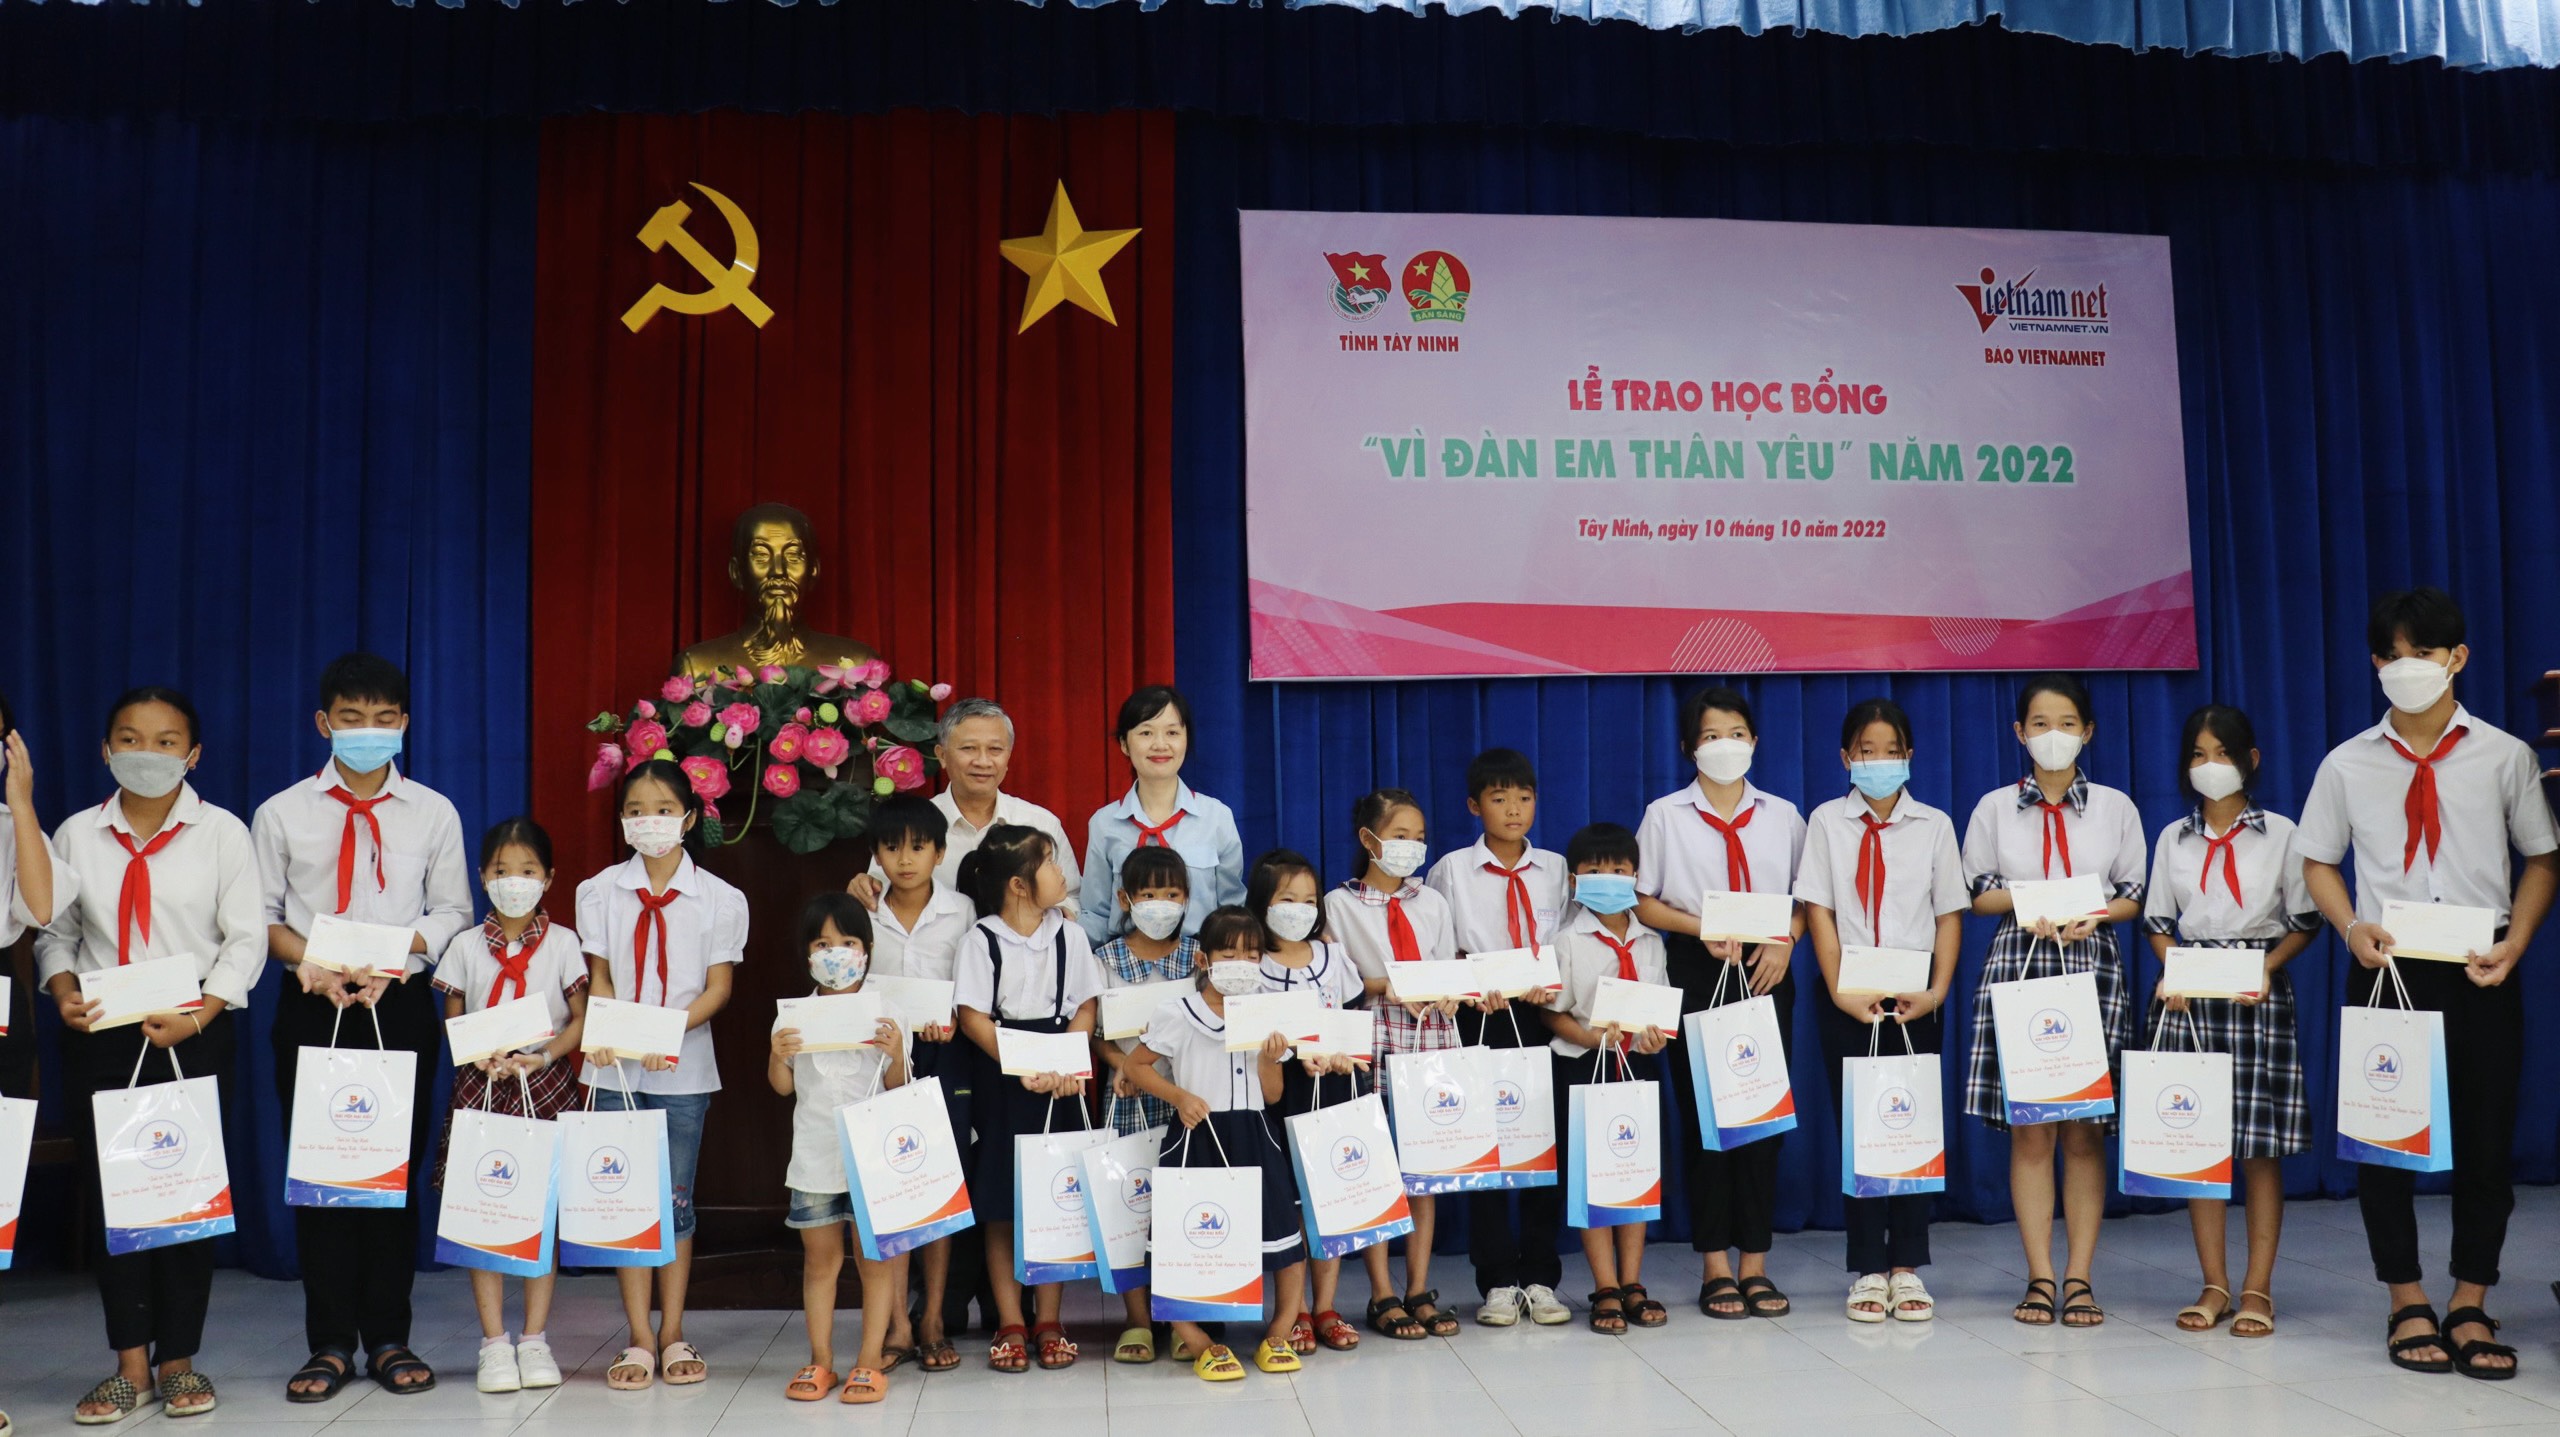 Tây Ninh tổ chức Lễ trao học bổng “Vì đàn em thân yêu” năm 2022.